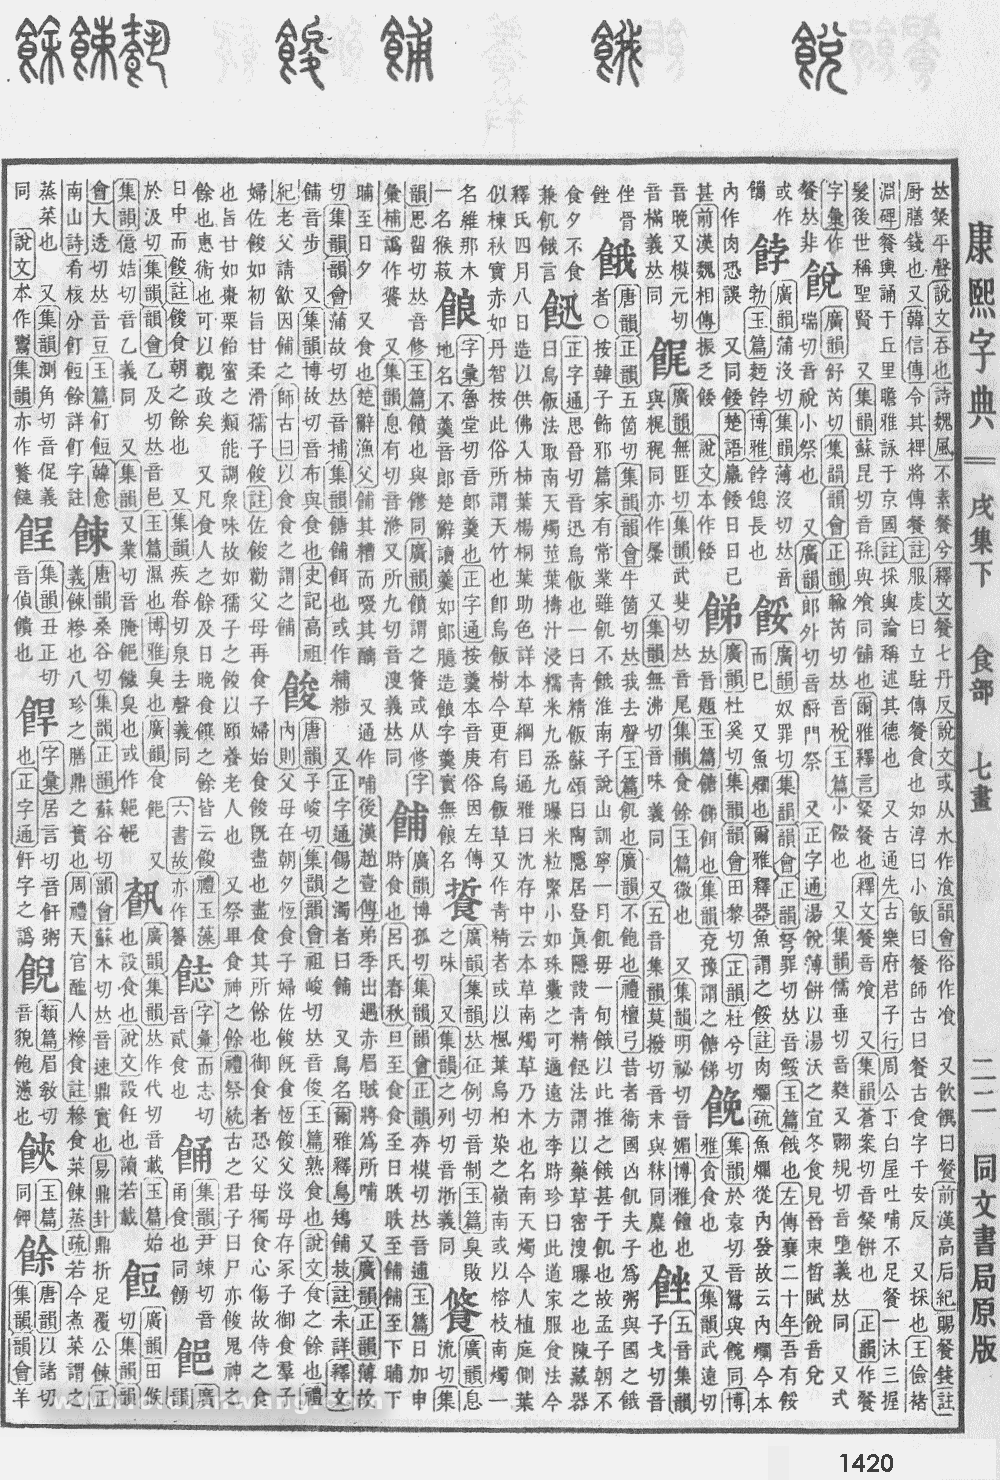 康熙字典掃描版第1420頁